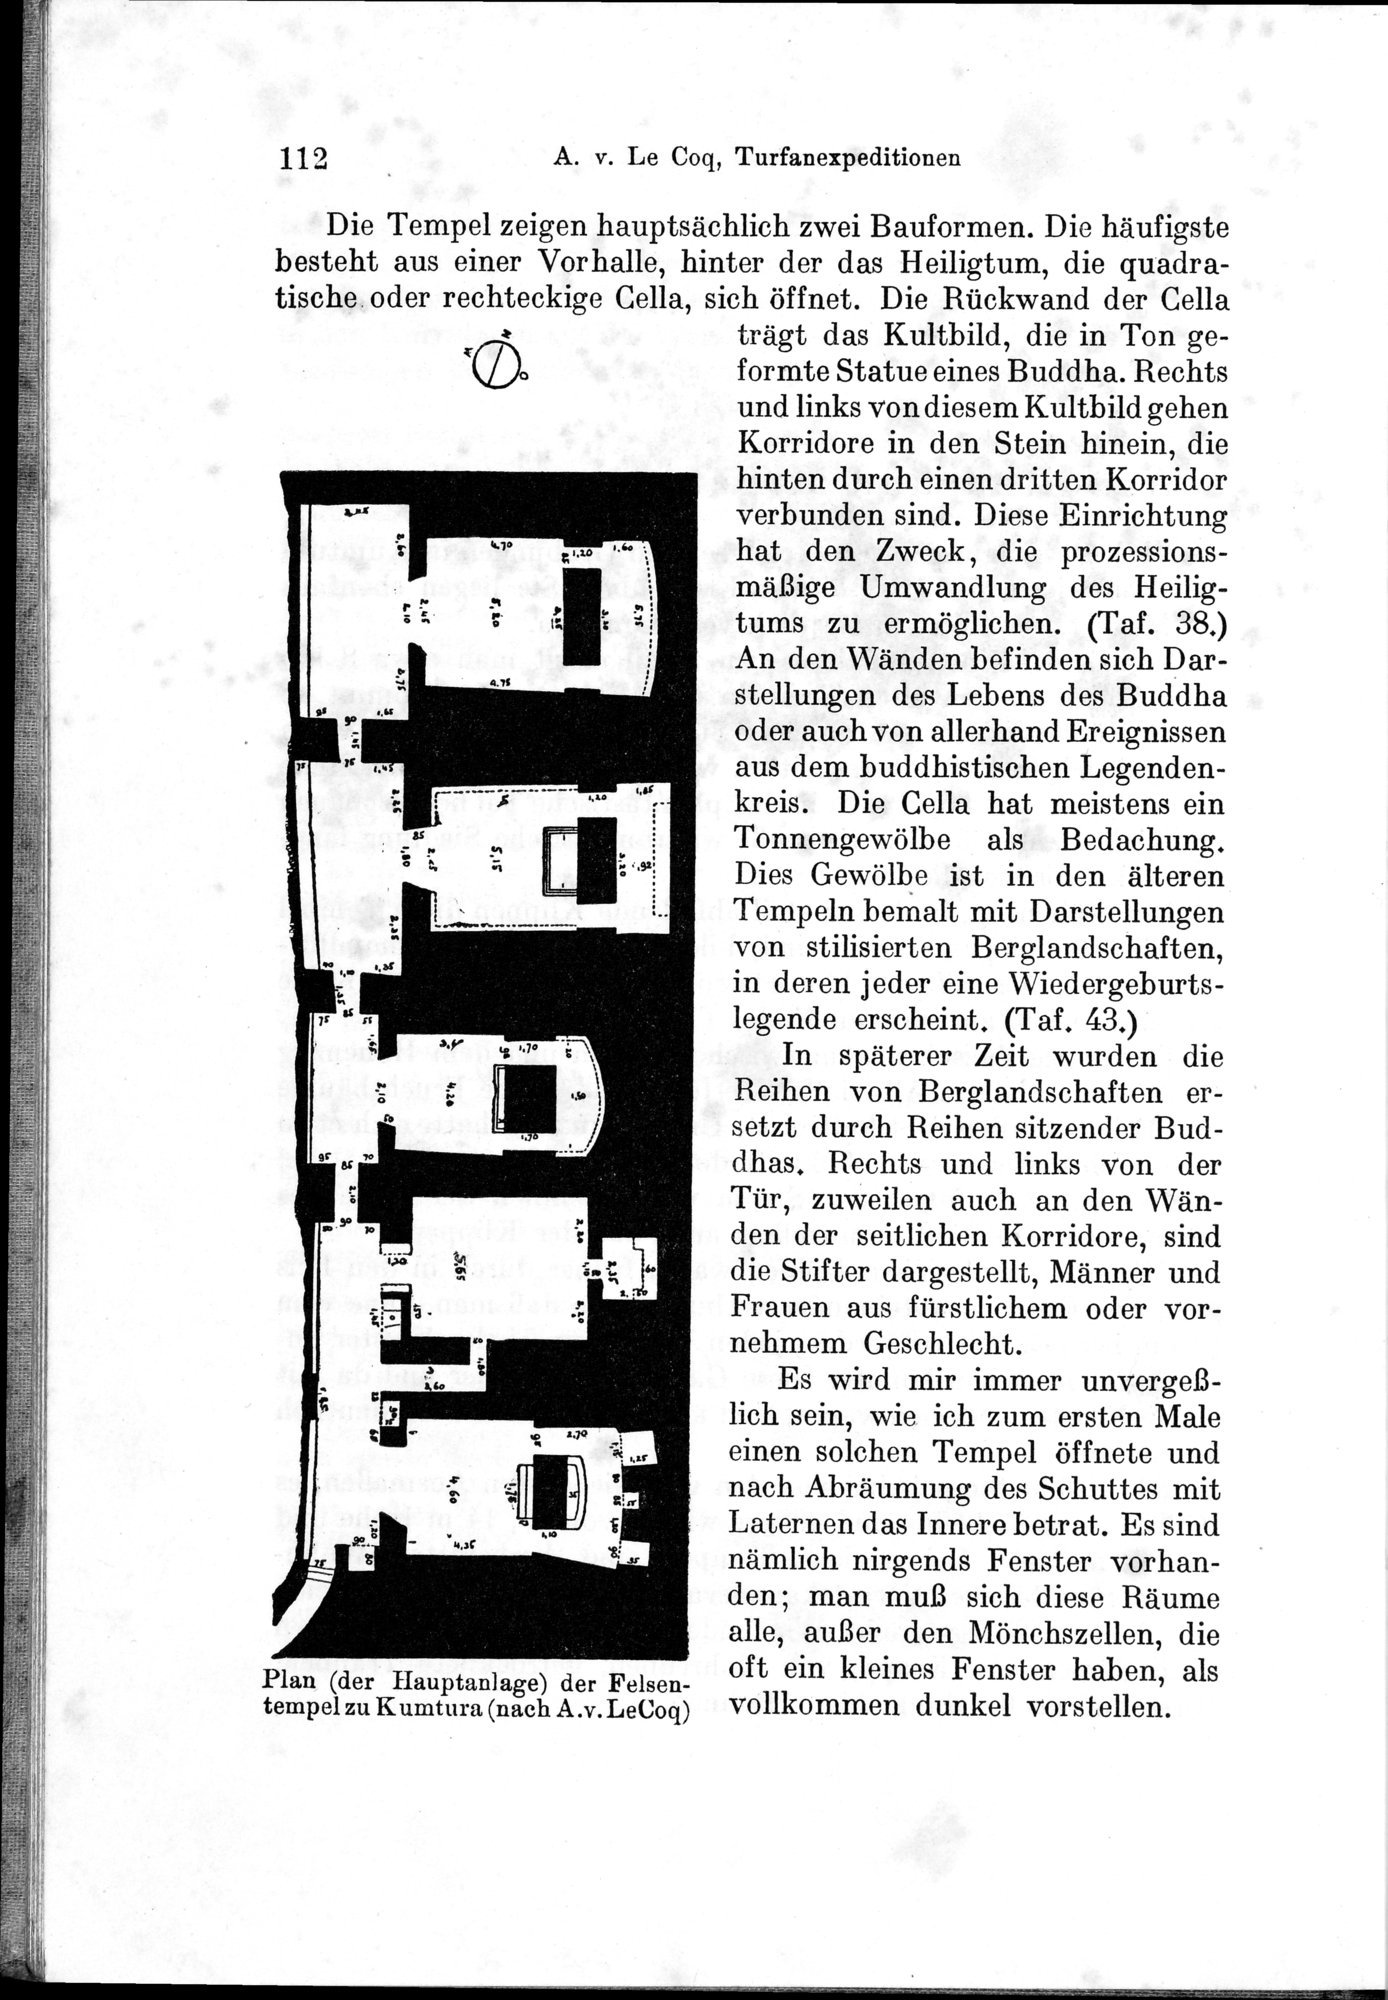 Auf Hellas Spuren in Ostturkistan : vol.1 / Page 162 (Grayscale High Resolution Image)